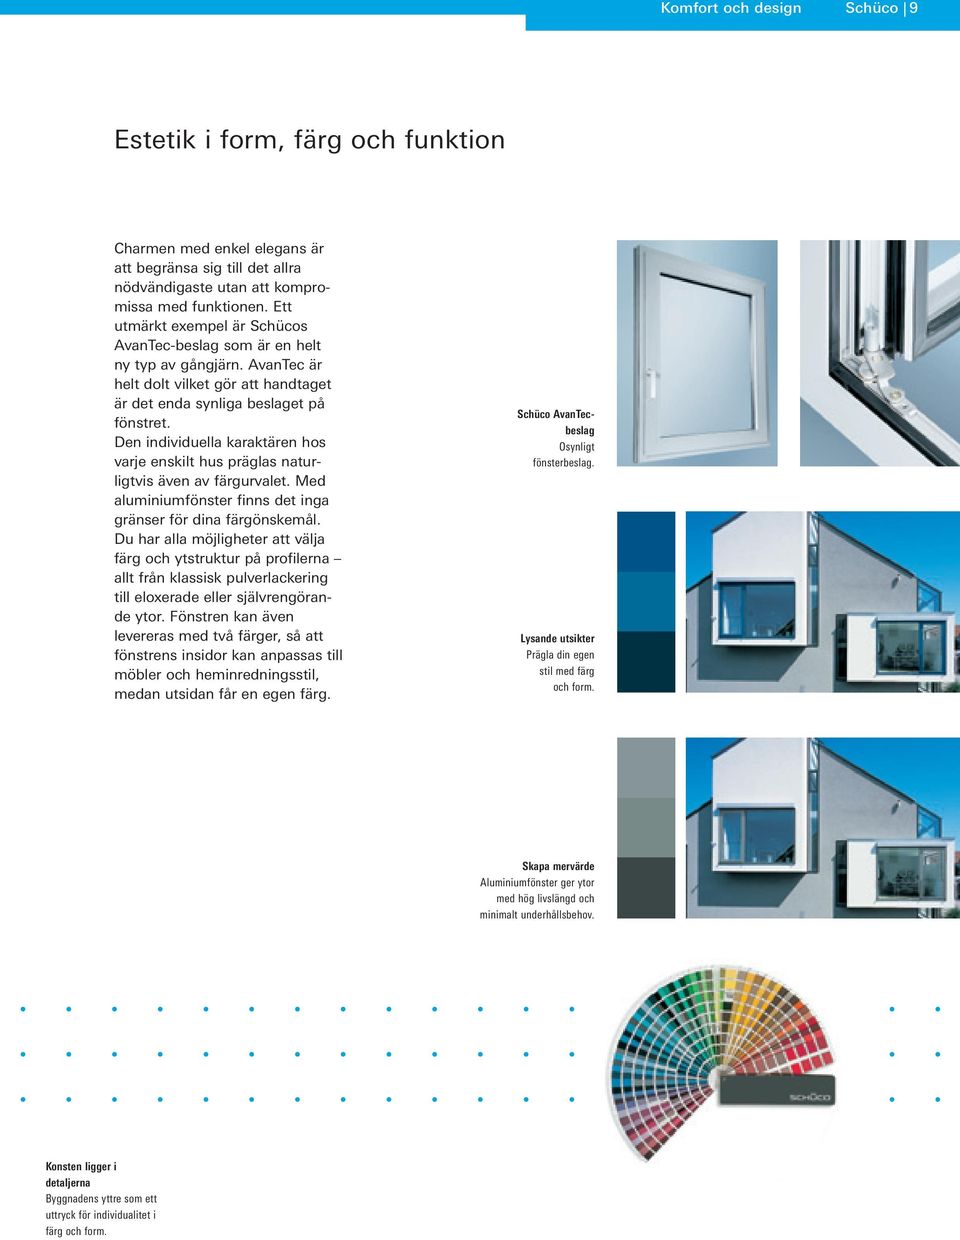 Den individuella karaktären hos varje enskilt hus präglas naturligtvis även av färgurvalet. Med aluminiumfönster finns det inga gränser för dina färgönskemål.